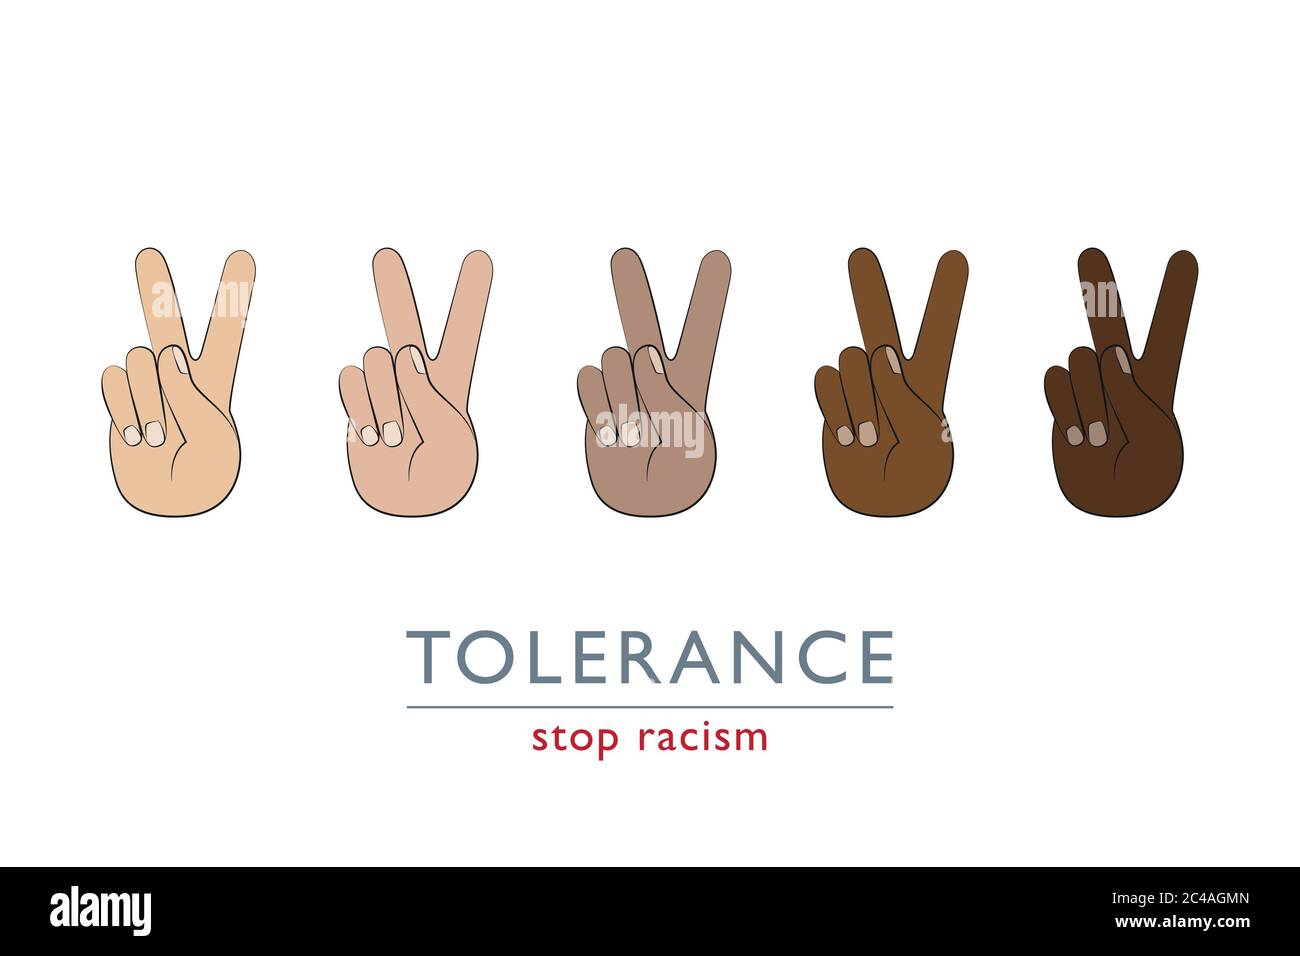 Stop Rassismus Frieden und Toleranz Konzept mit Händen in verschiedenen Farben Vektor-Illustration EPS10 Stock Vektor